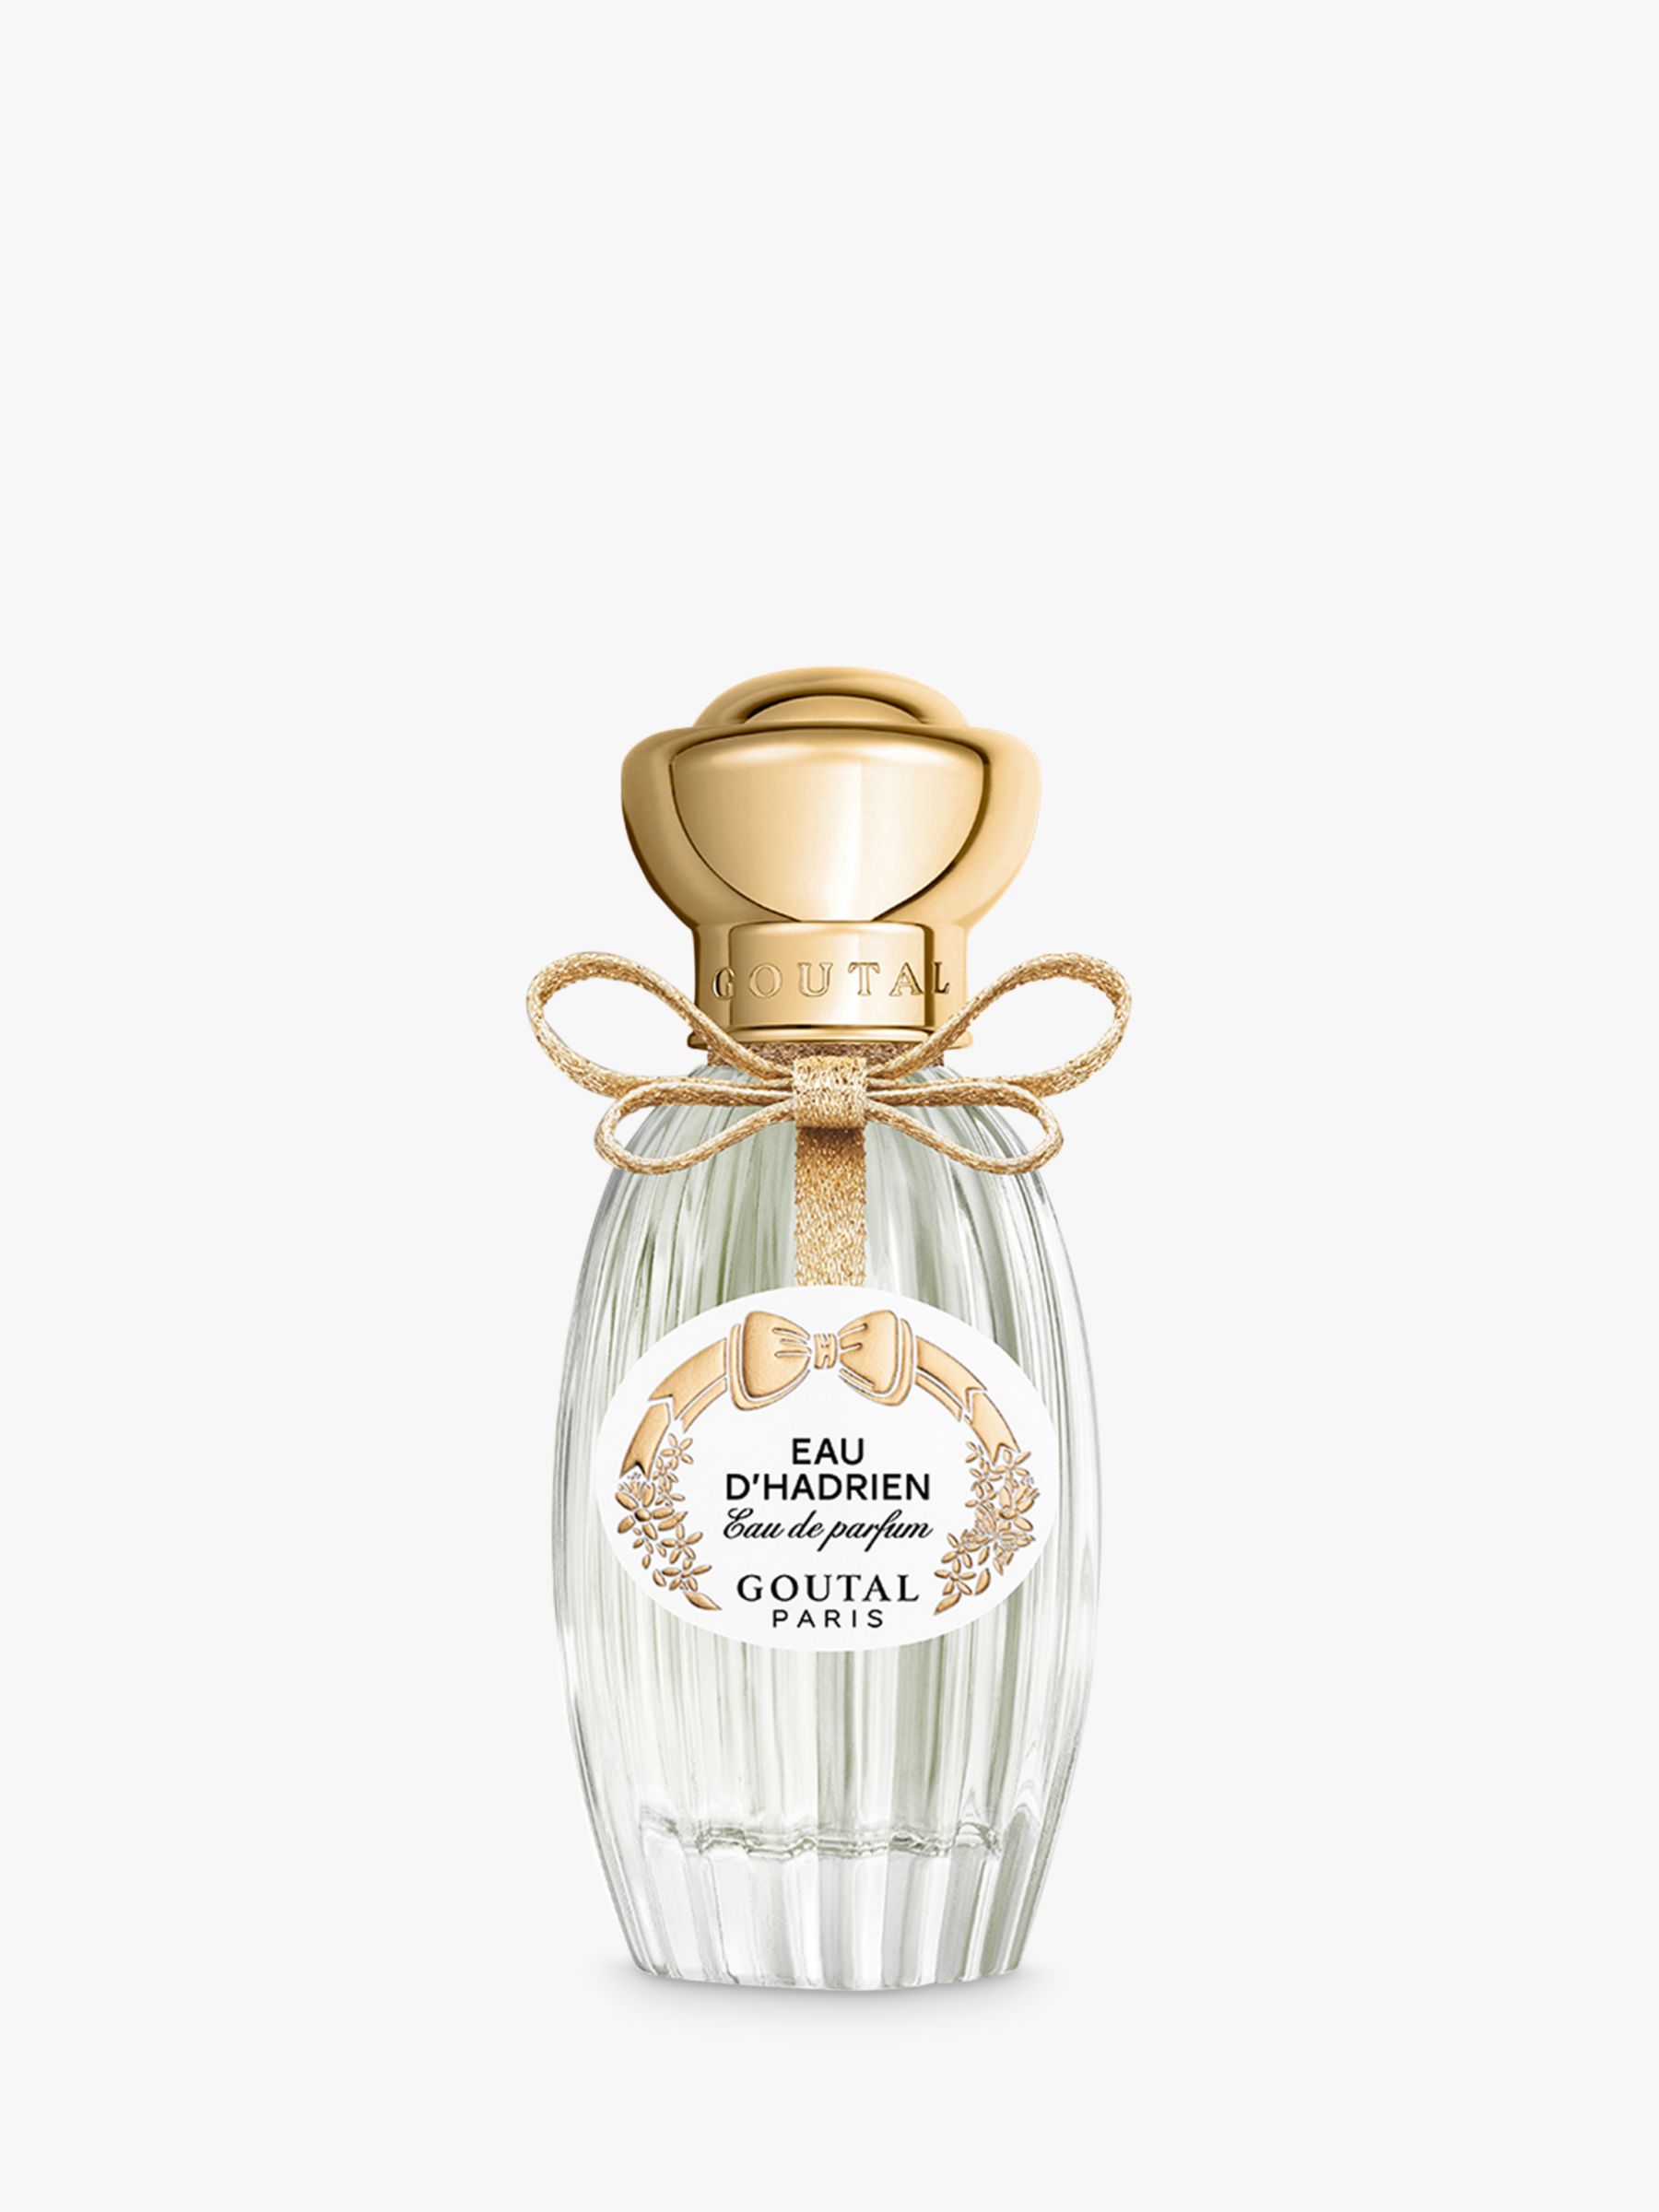 Goutal Eau d'Hadrien Eau de Parfum, 50ml at John Lewis & Partners